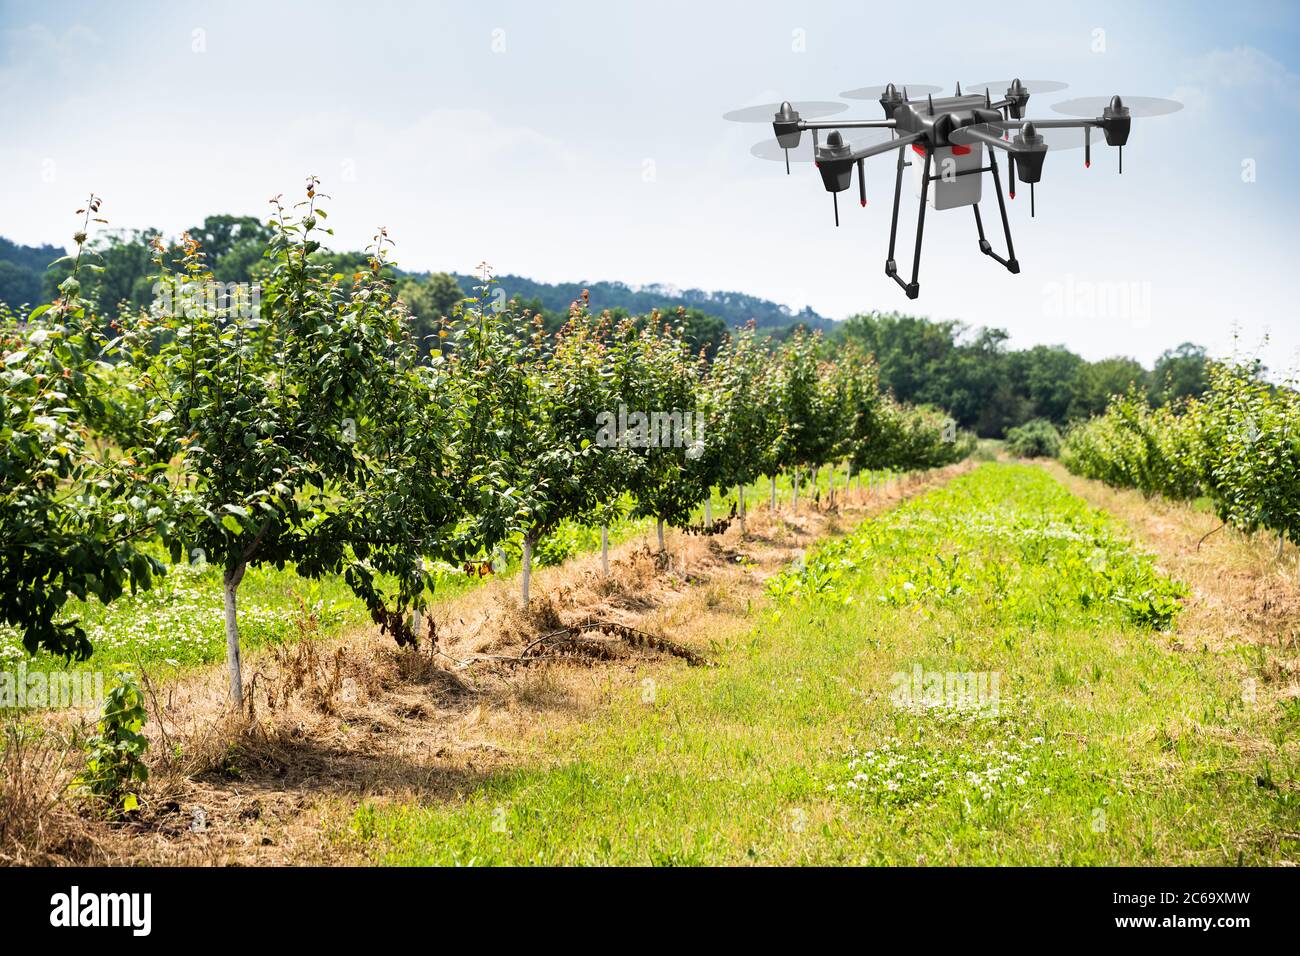 Agricultura Industria Tecnología agrícola en campo vegetal o granja Foto de stock